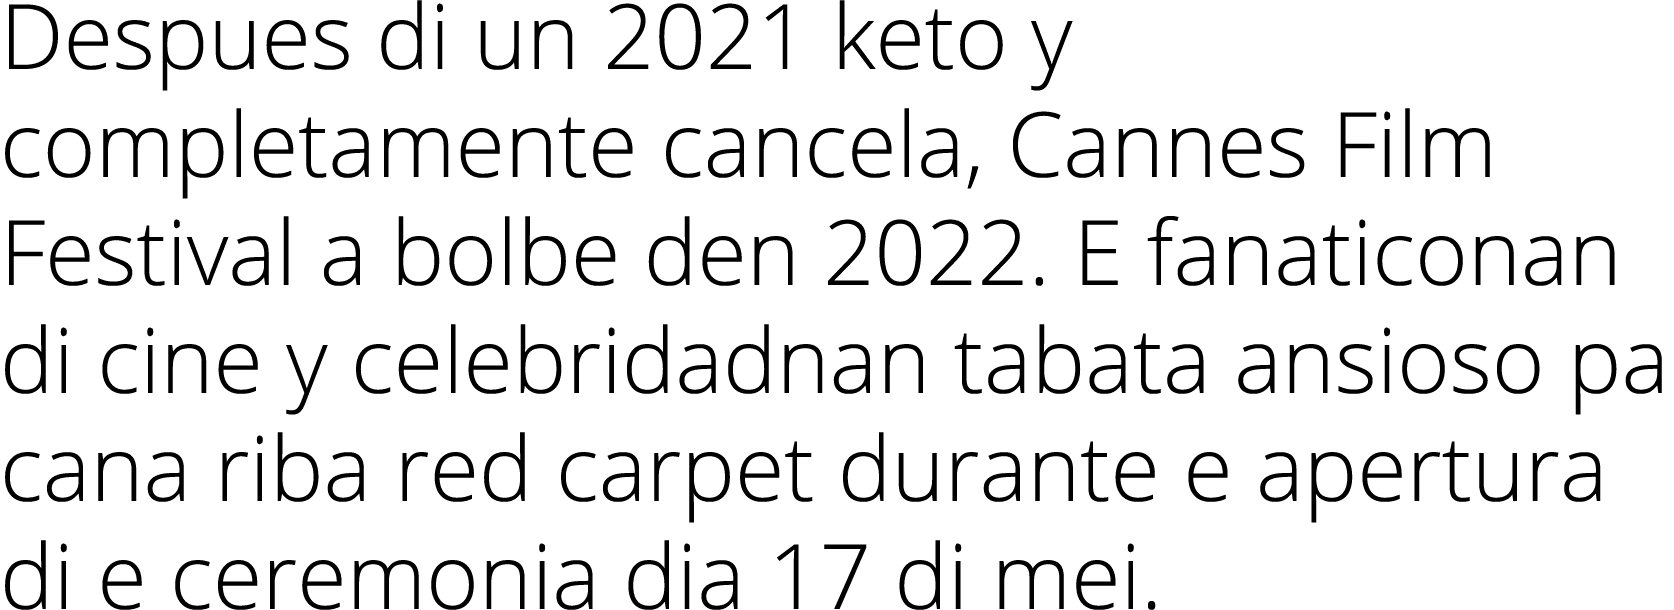 Despues di un 2021 keto y completamente cancela, Cannes Film Festival a bolbe den 2022. E fanaticonan di cine y celeb...